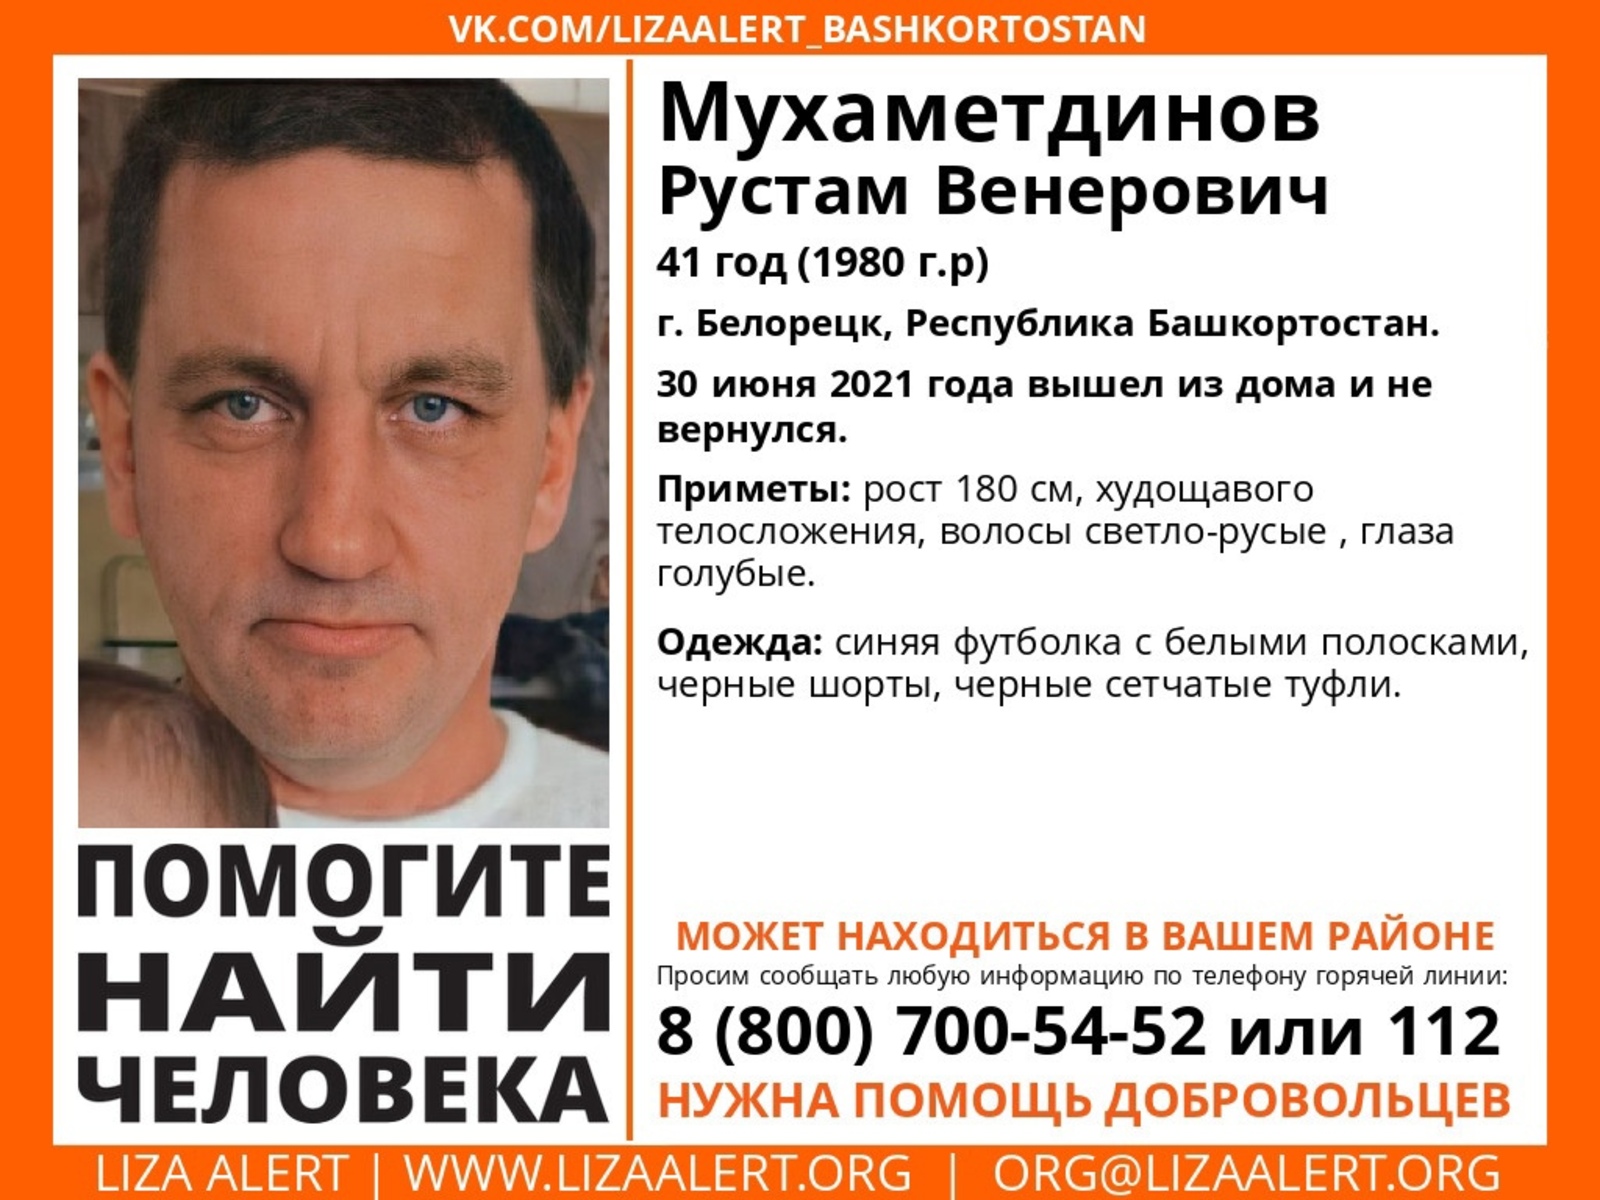 В Башкирии разыскивают пропавшего Рустама Мухаметдинова